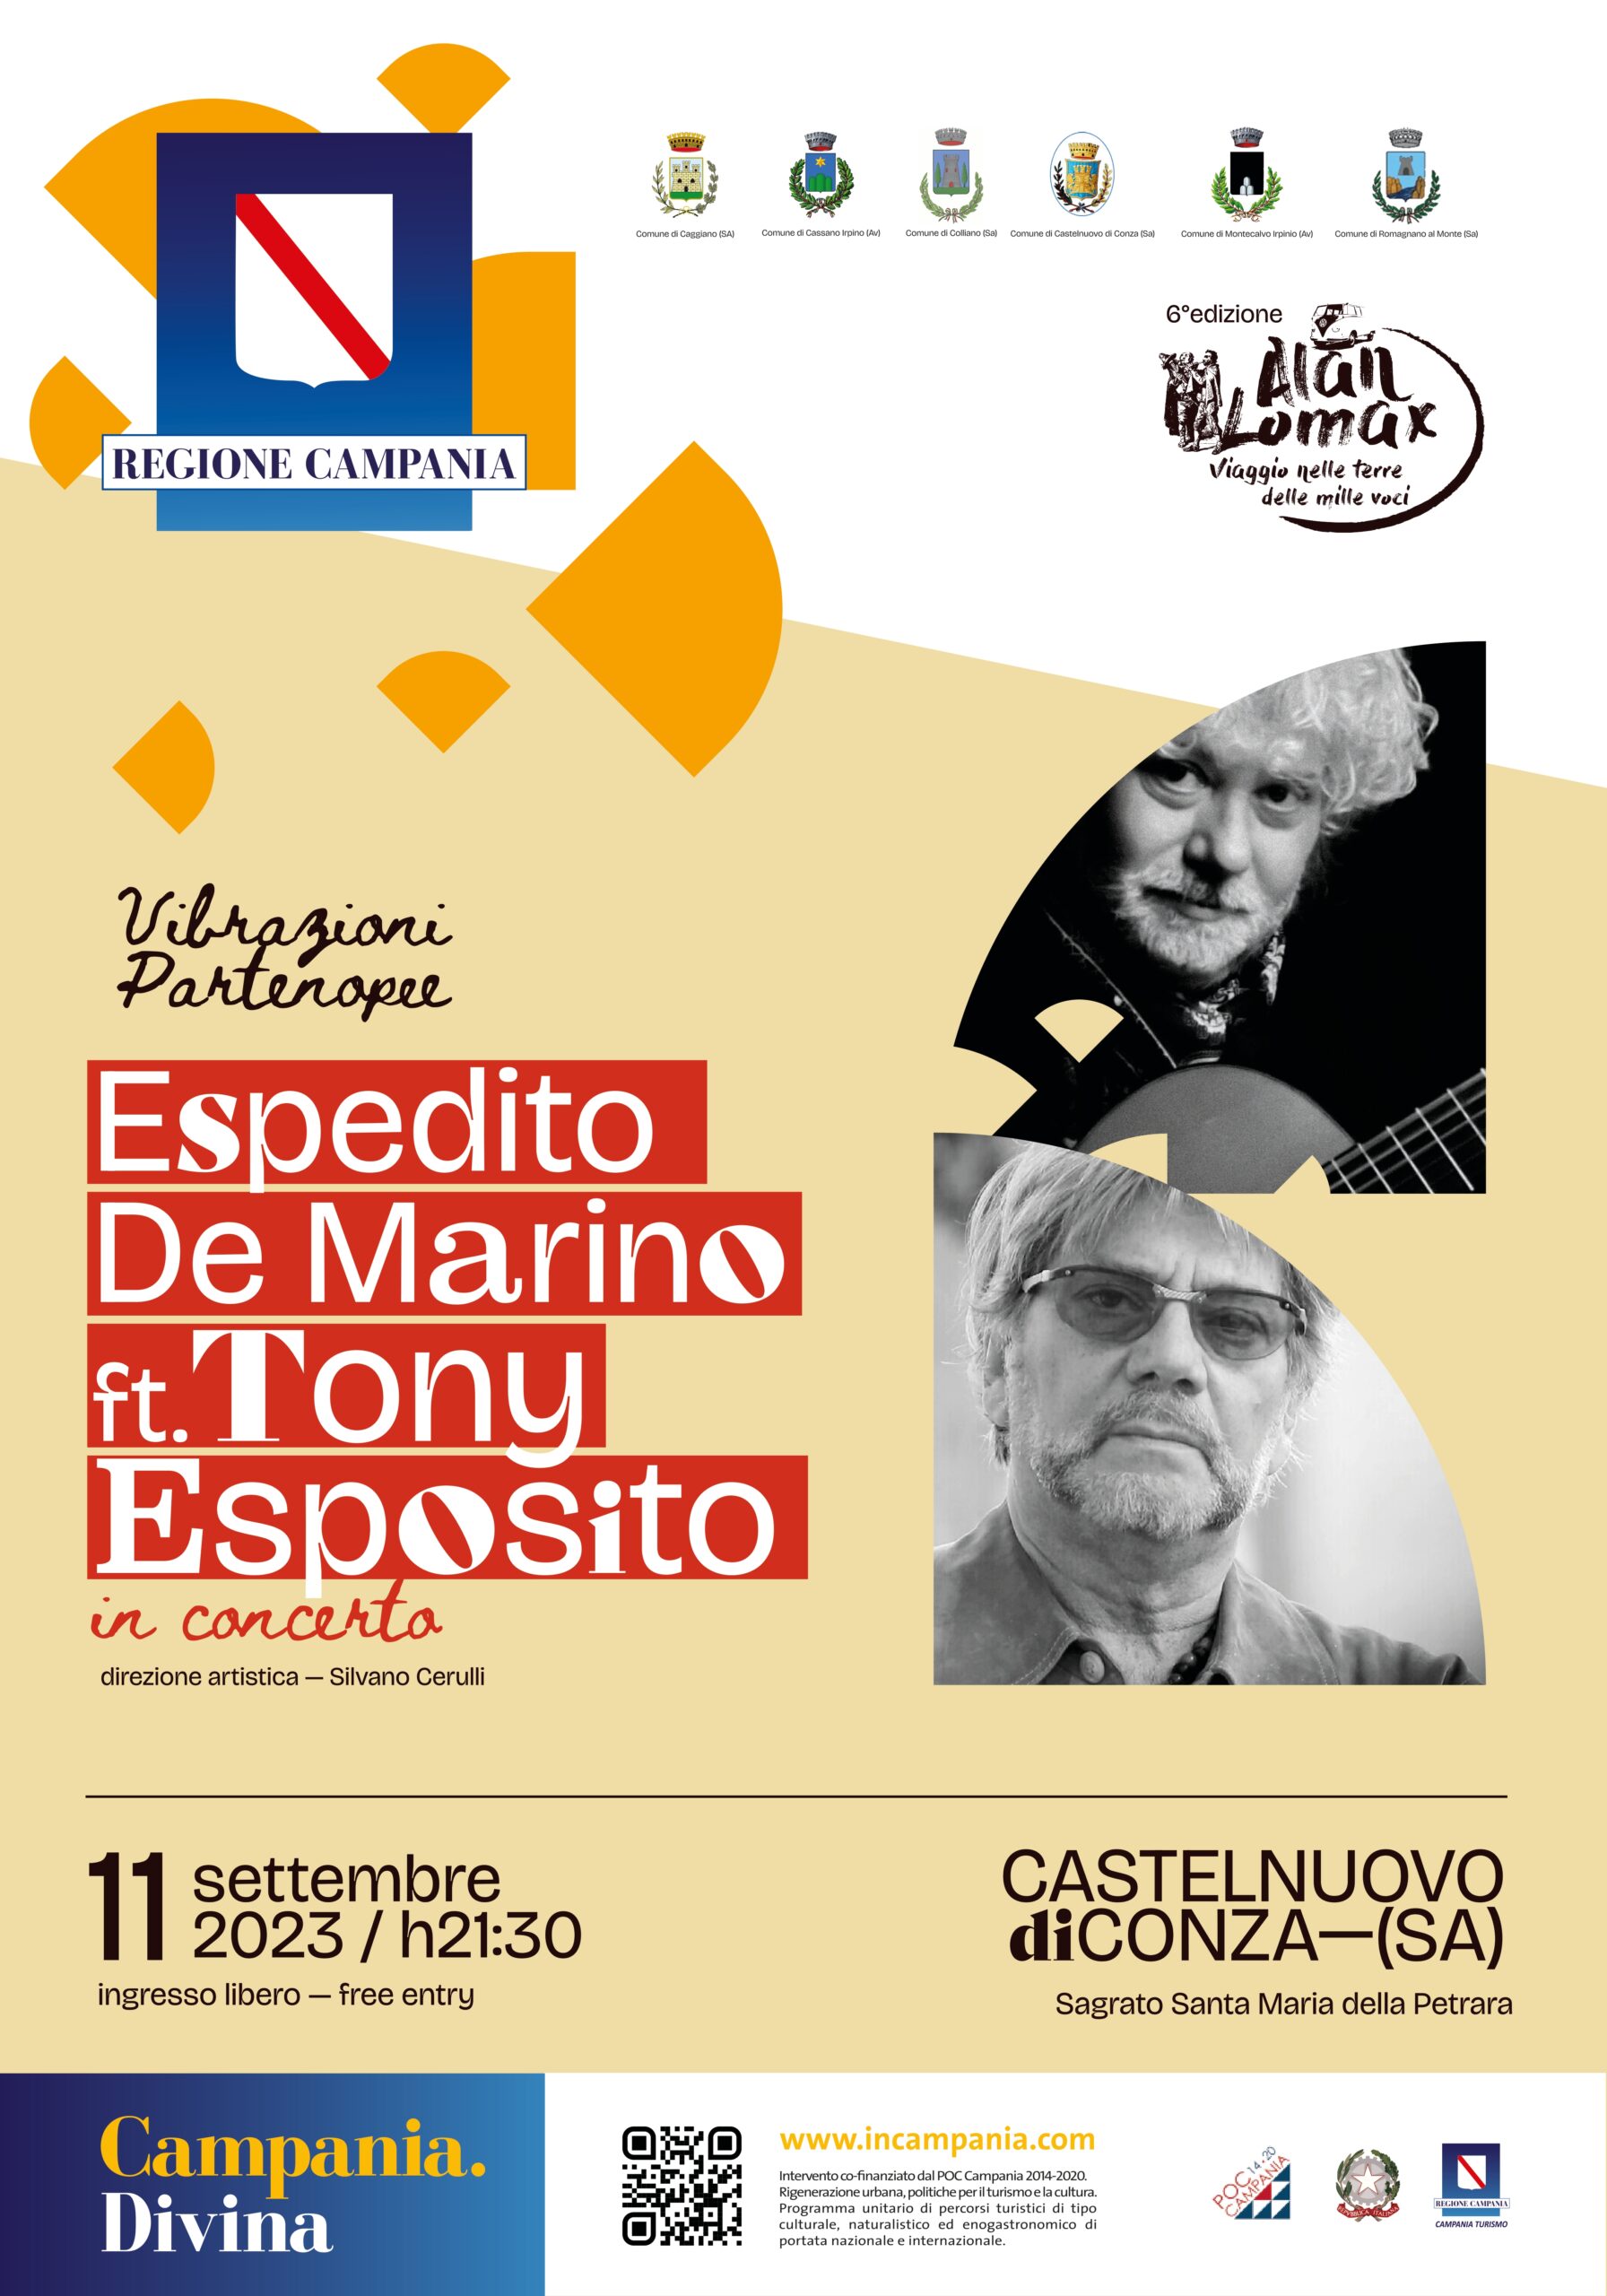 Castelnuovo di Conza: “Alan Lomax…viaggio nelle terre delle mille voci”, concerto di Espedito De Marino